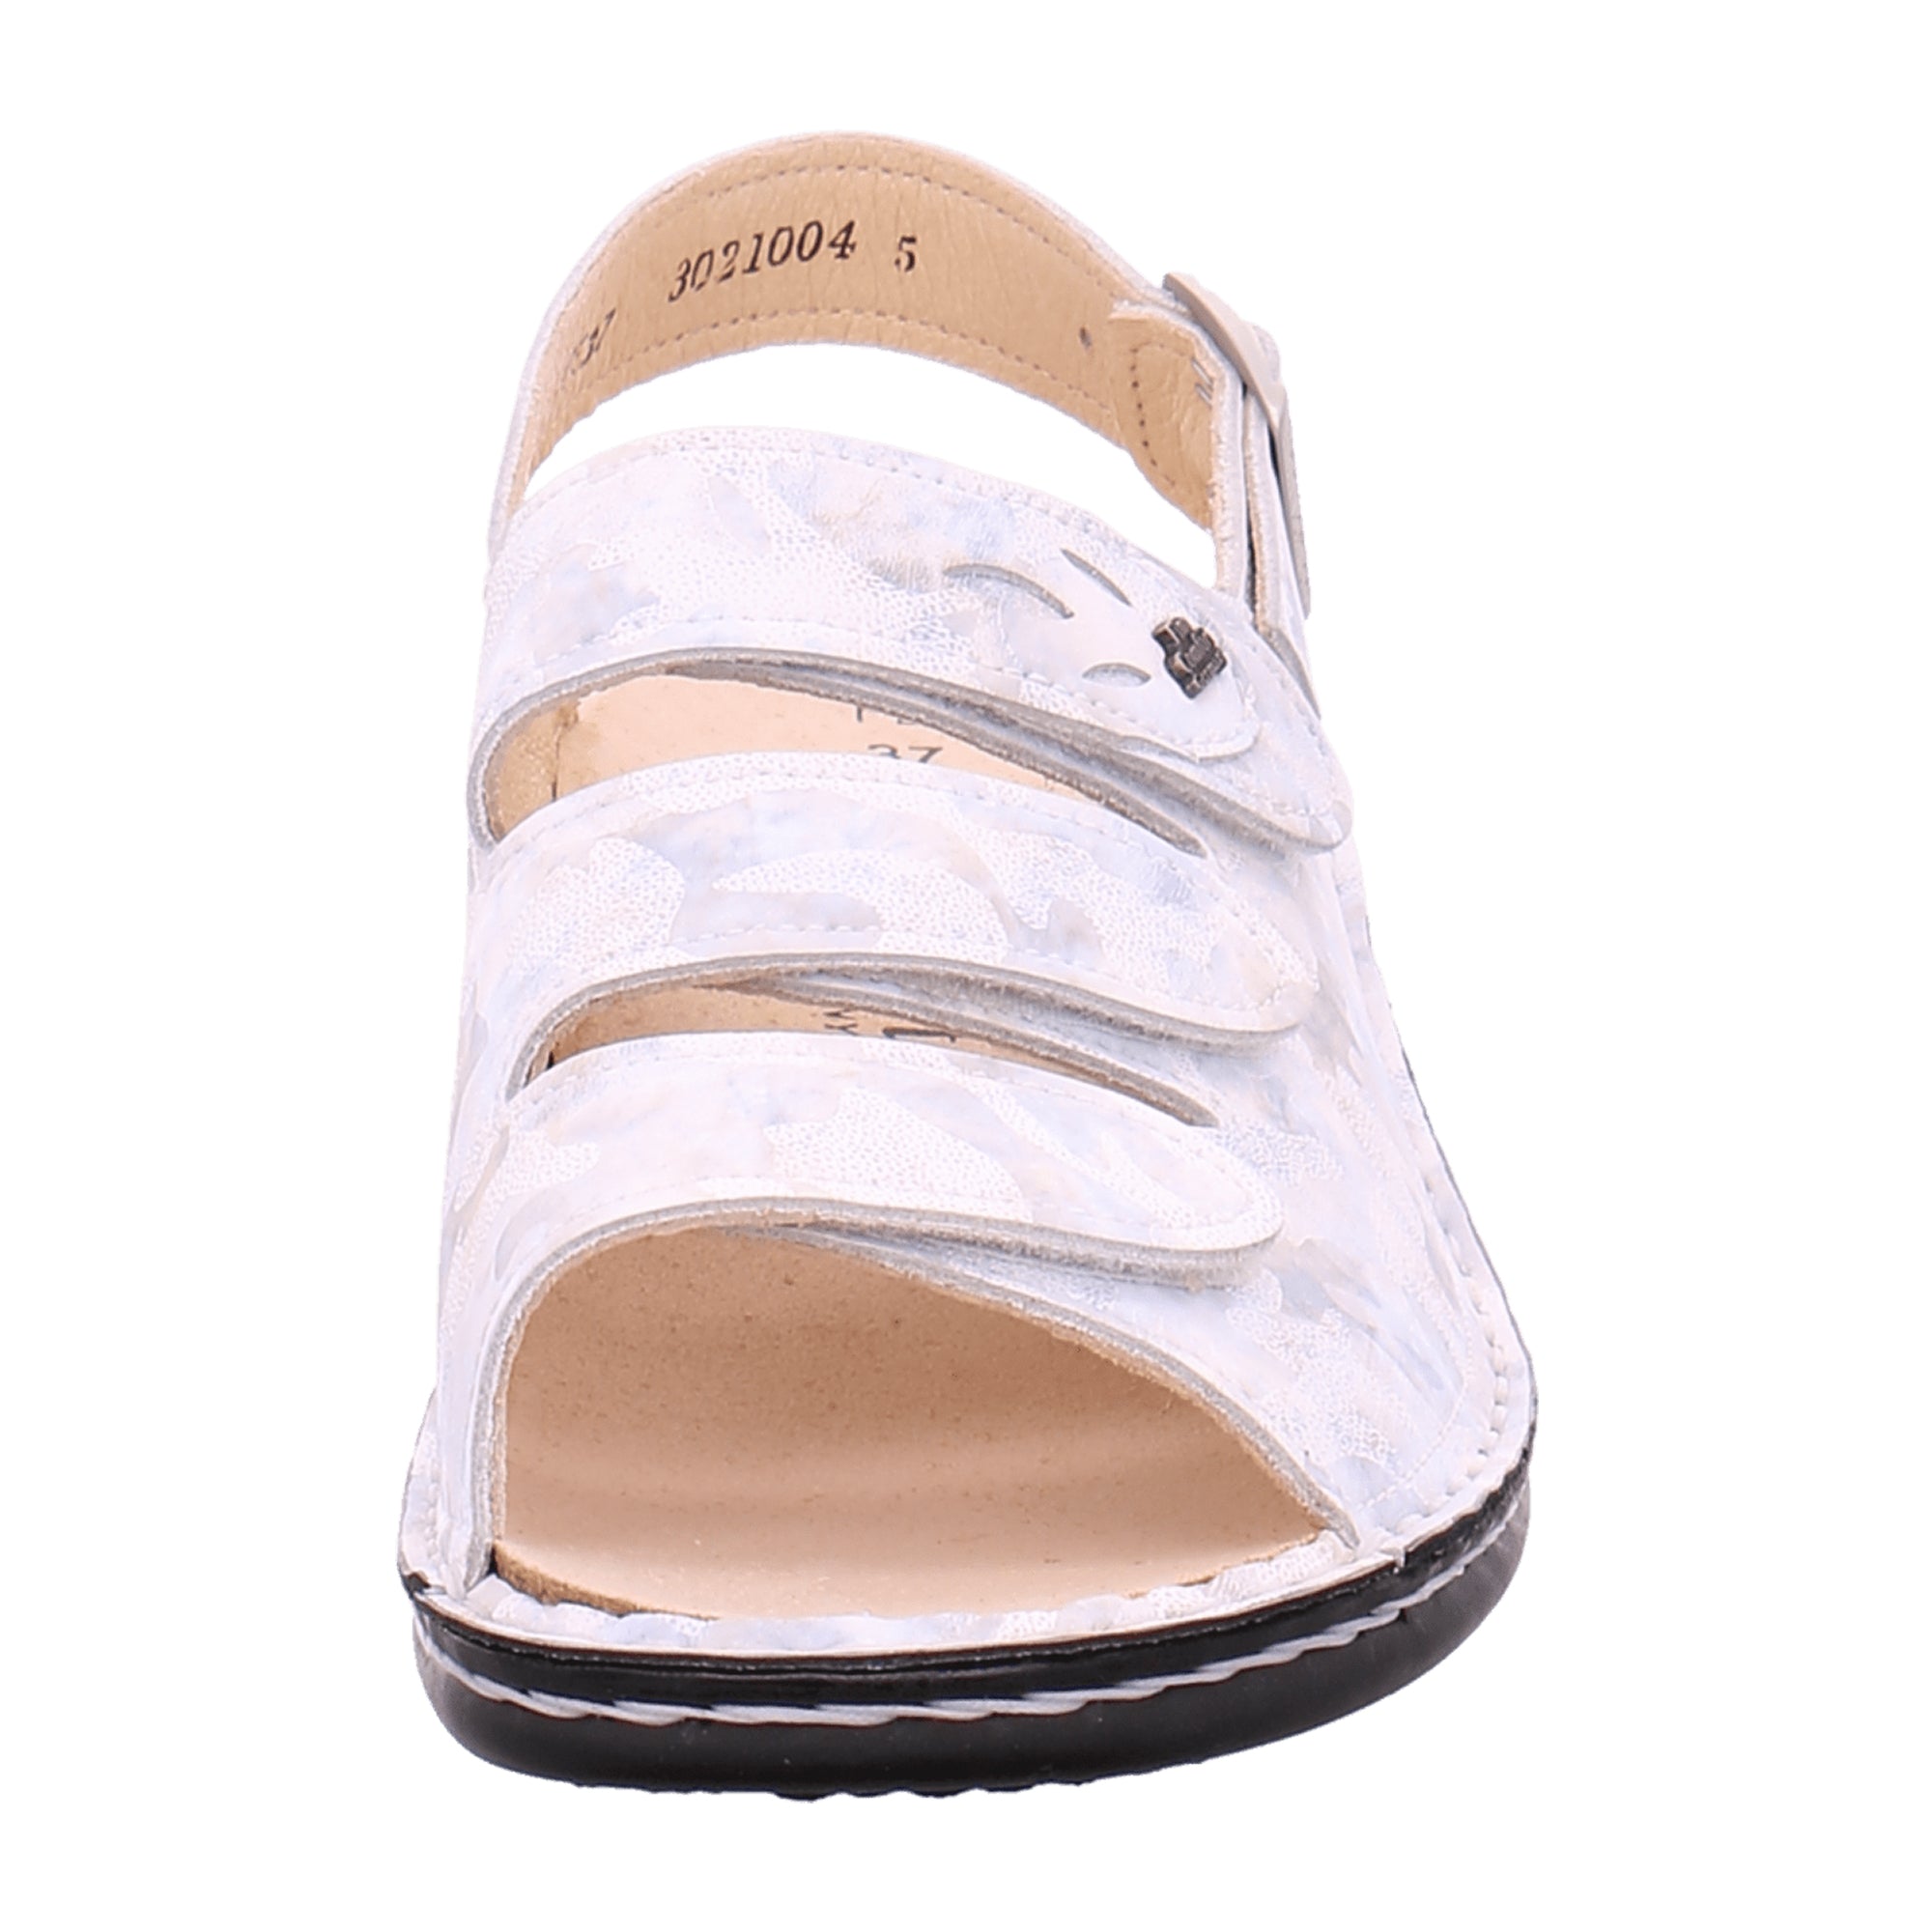 Finn Comfort Saloniki Women's Comfort Sandals - Elegant White